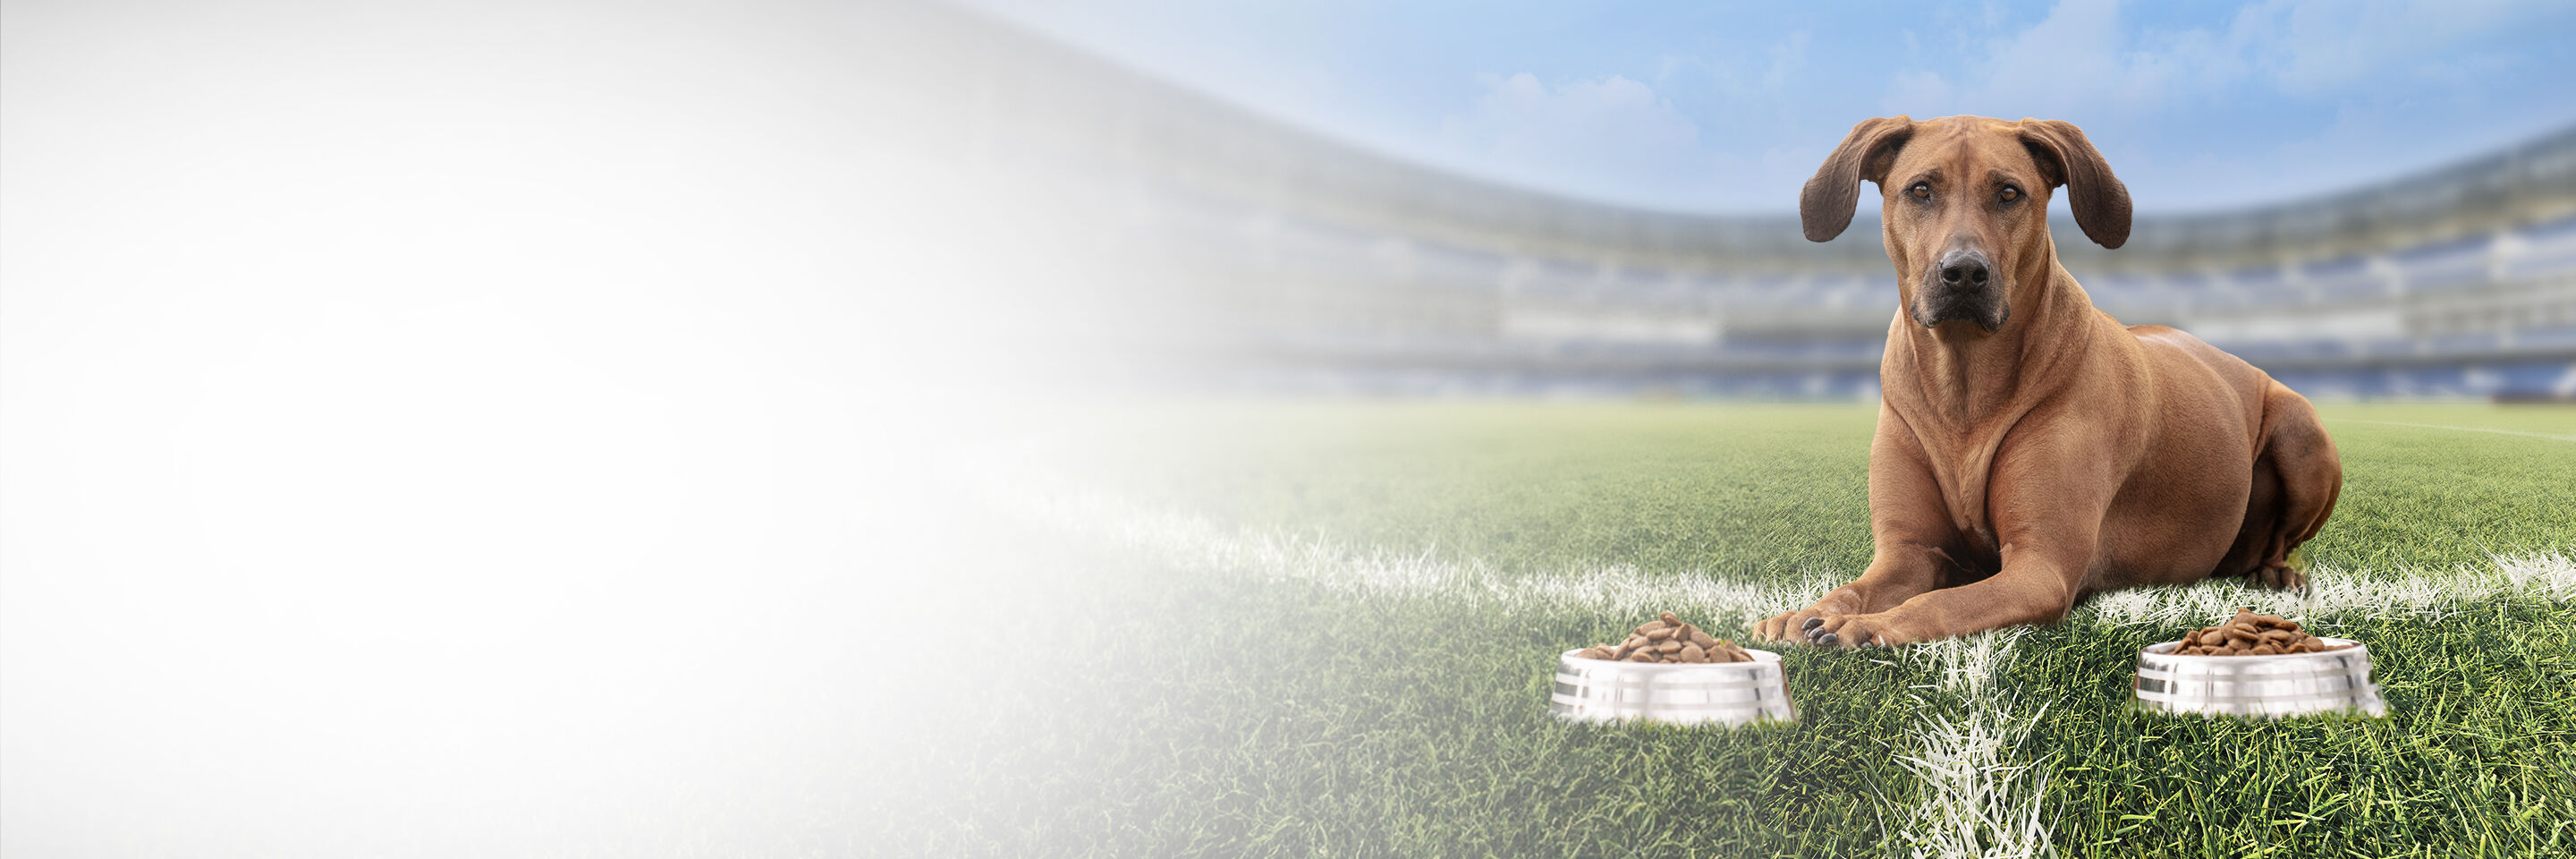 Braune Hündin Luma liegt auf einem Fußballfeld und vor ihr stehen zwei Futternäpfe